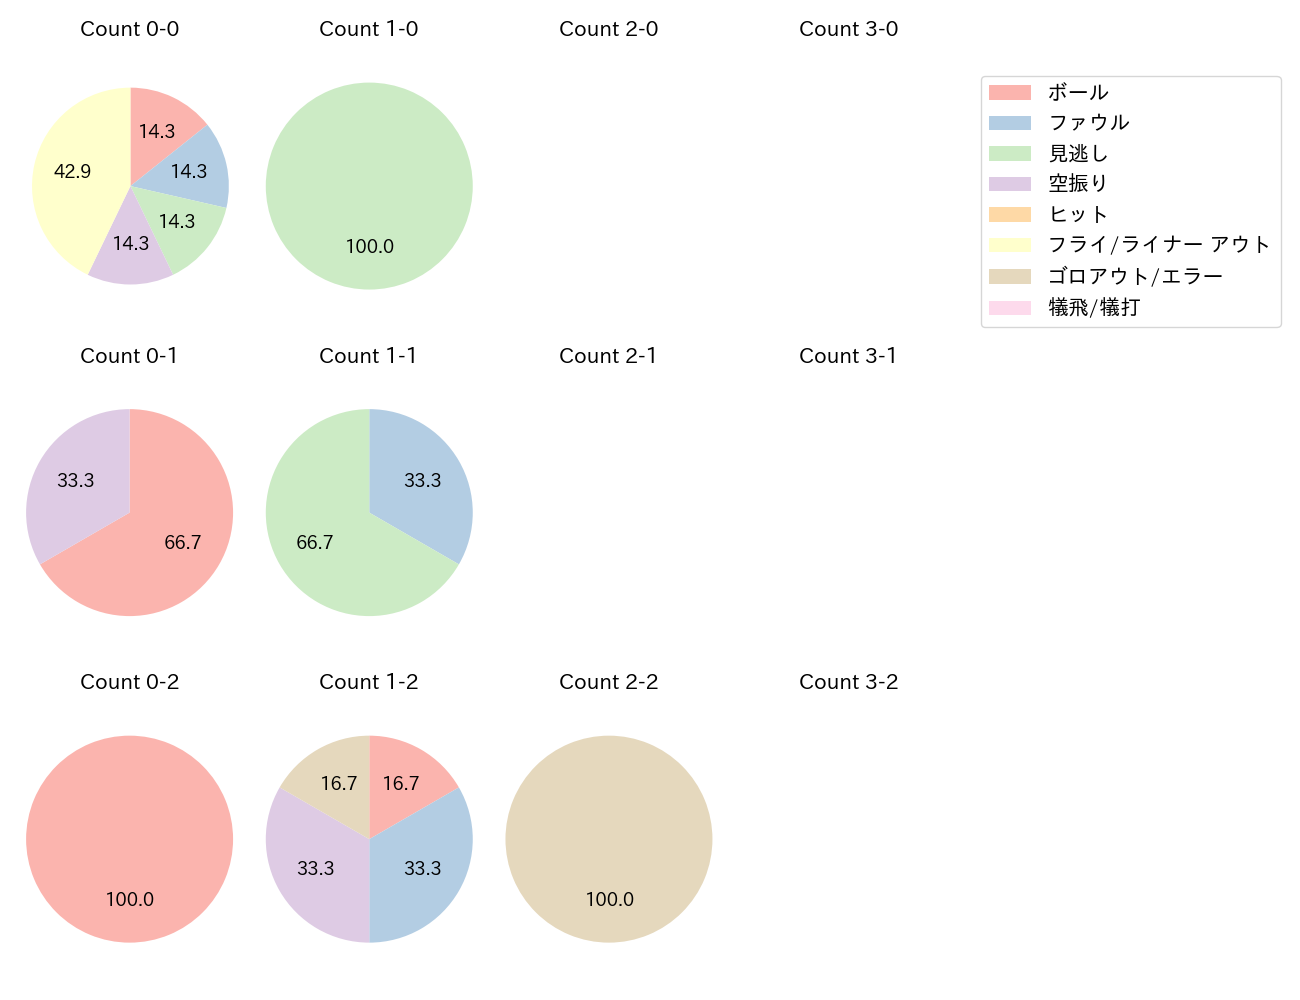 滝澤 夏央の球数分布(2022年9月)